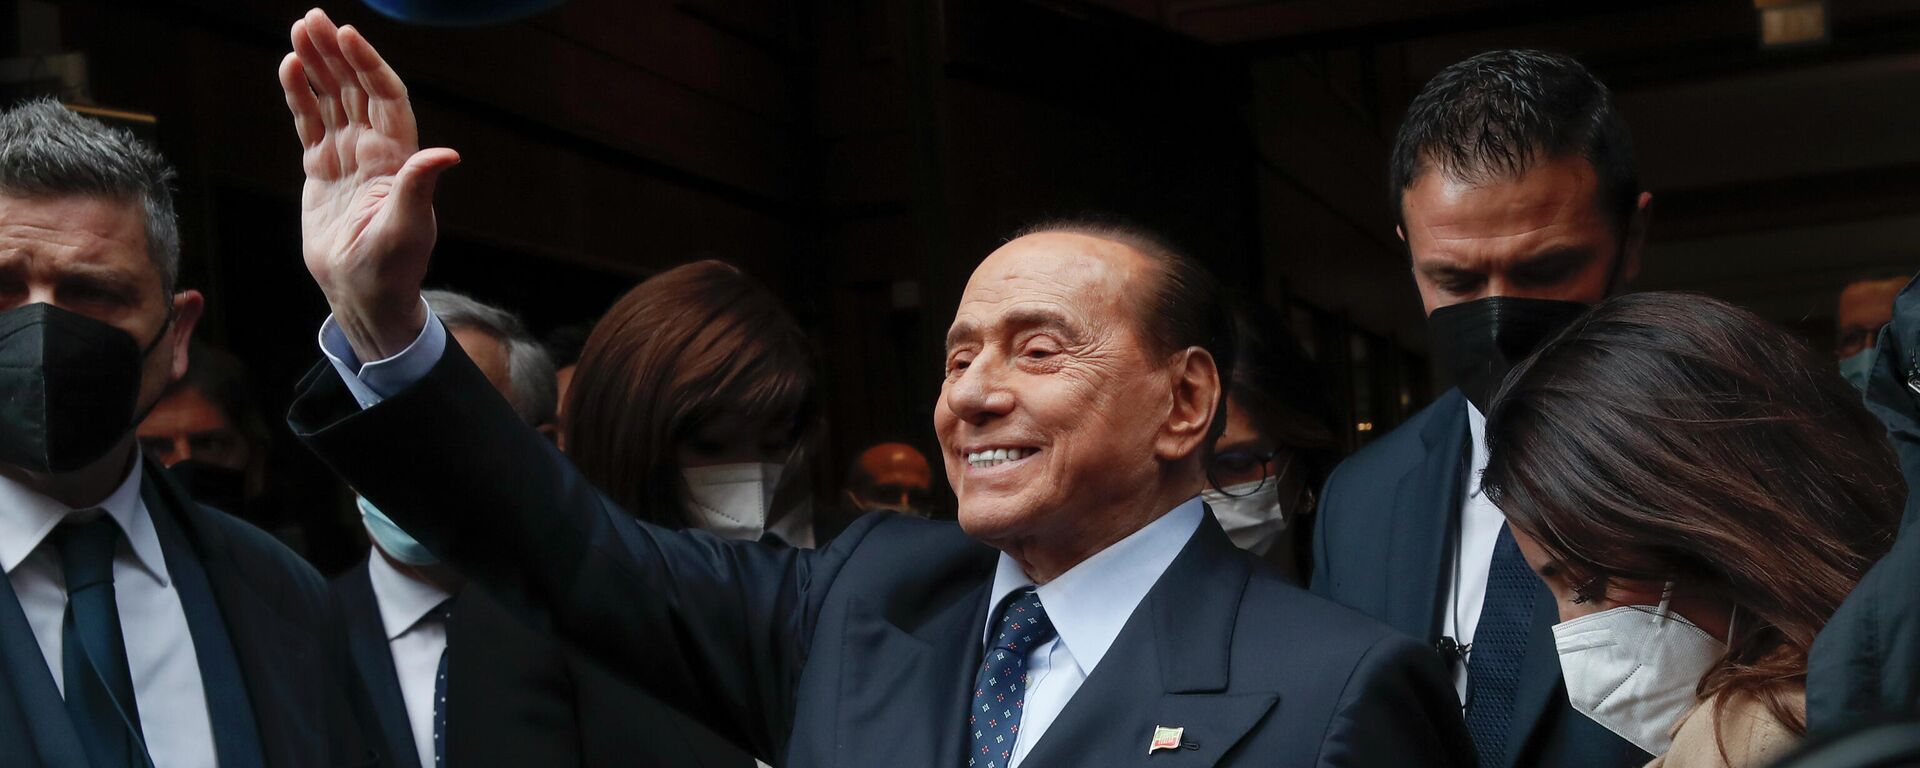 Silvio Berlusconi, candidato a la presidencia de Italia - Sputnik Mundo, 1920, 13.02.2023